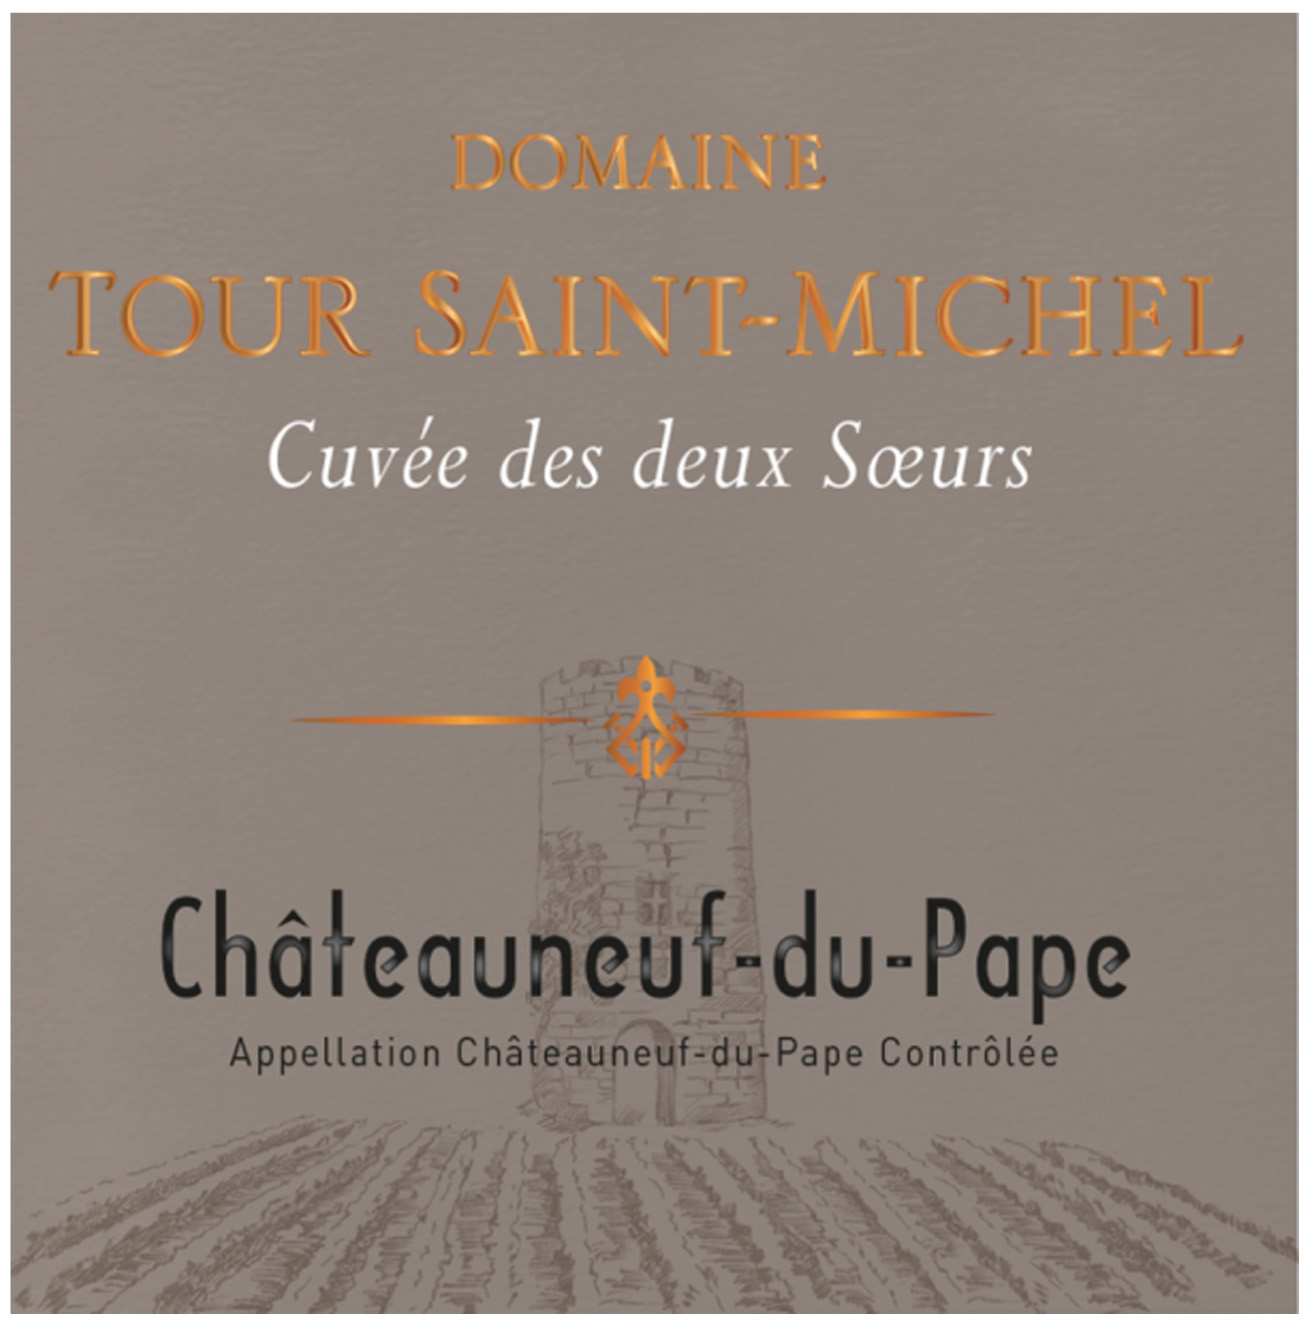 Domaine Tour Saint Michel - Cuvee des Deux Soeurs label